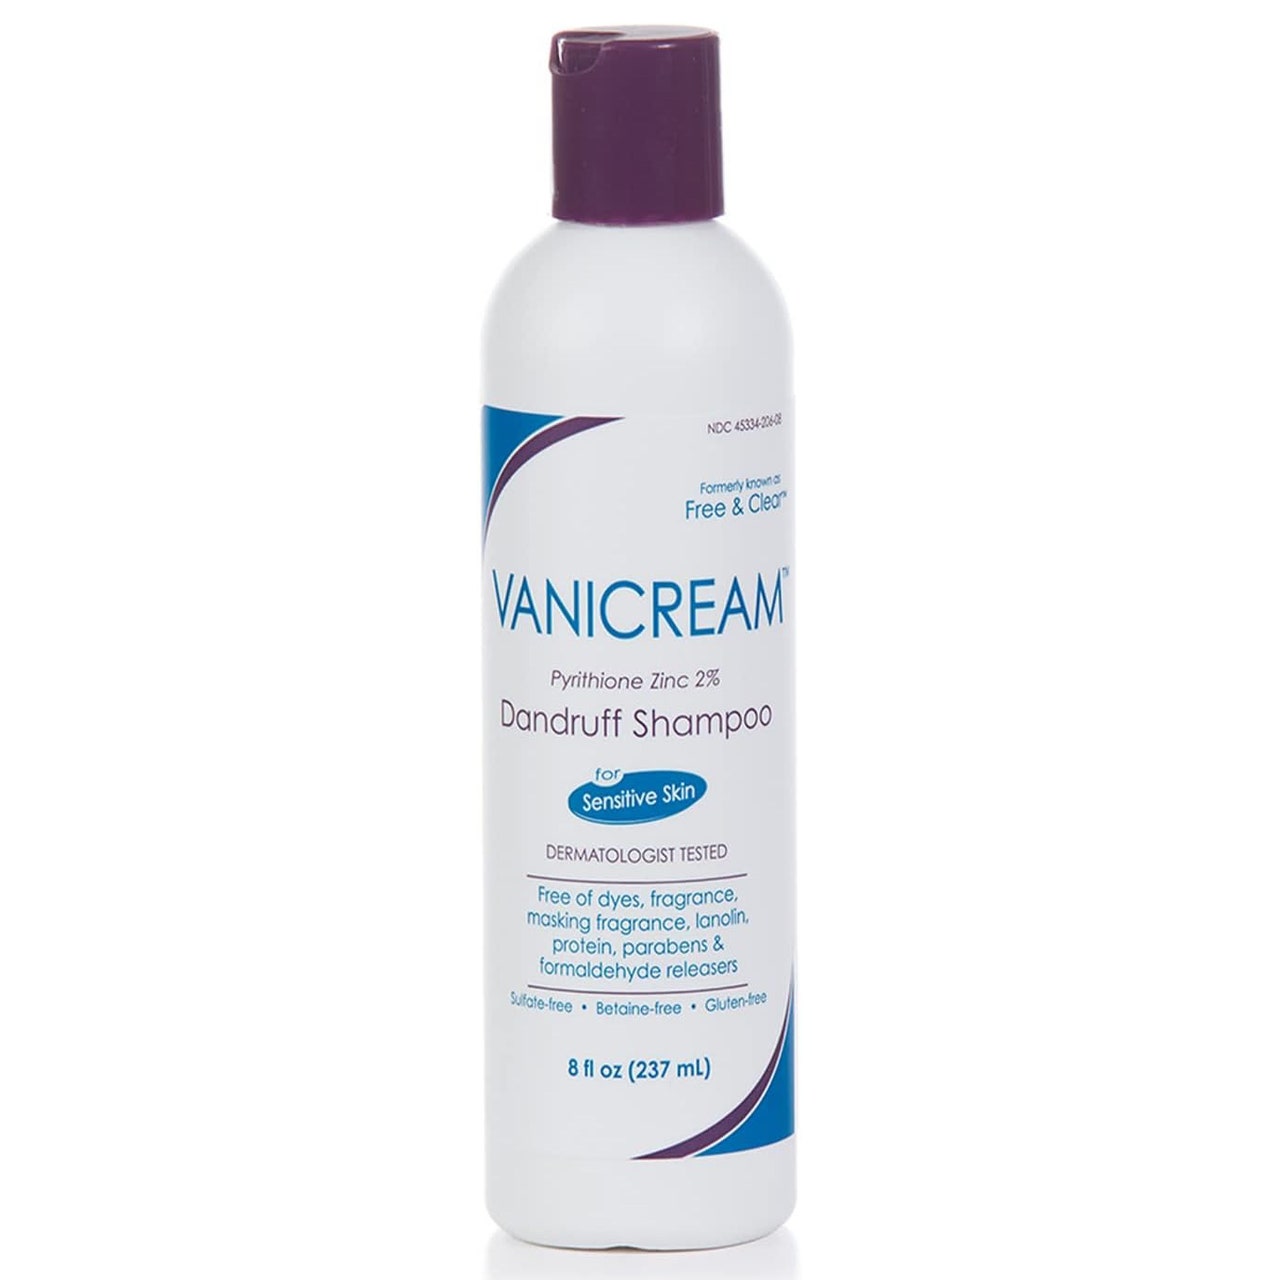 Vanicream Dandruff Shampoo weiße Flasche mit lila Verschluss auf weißem Hintergrund